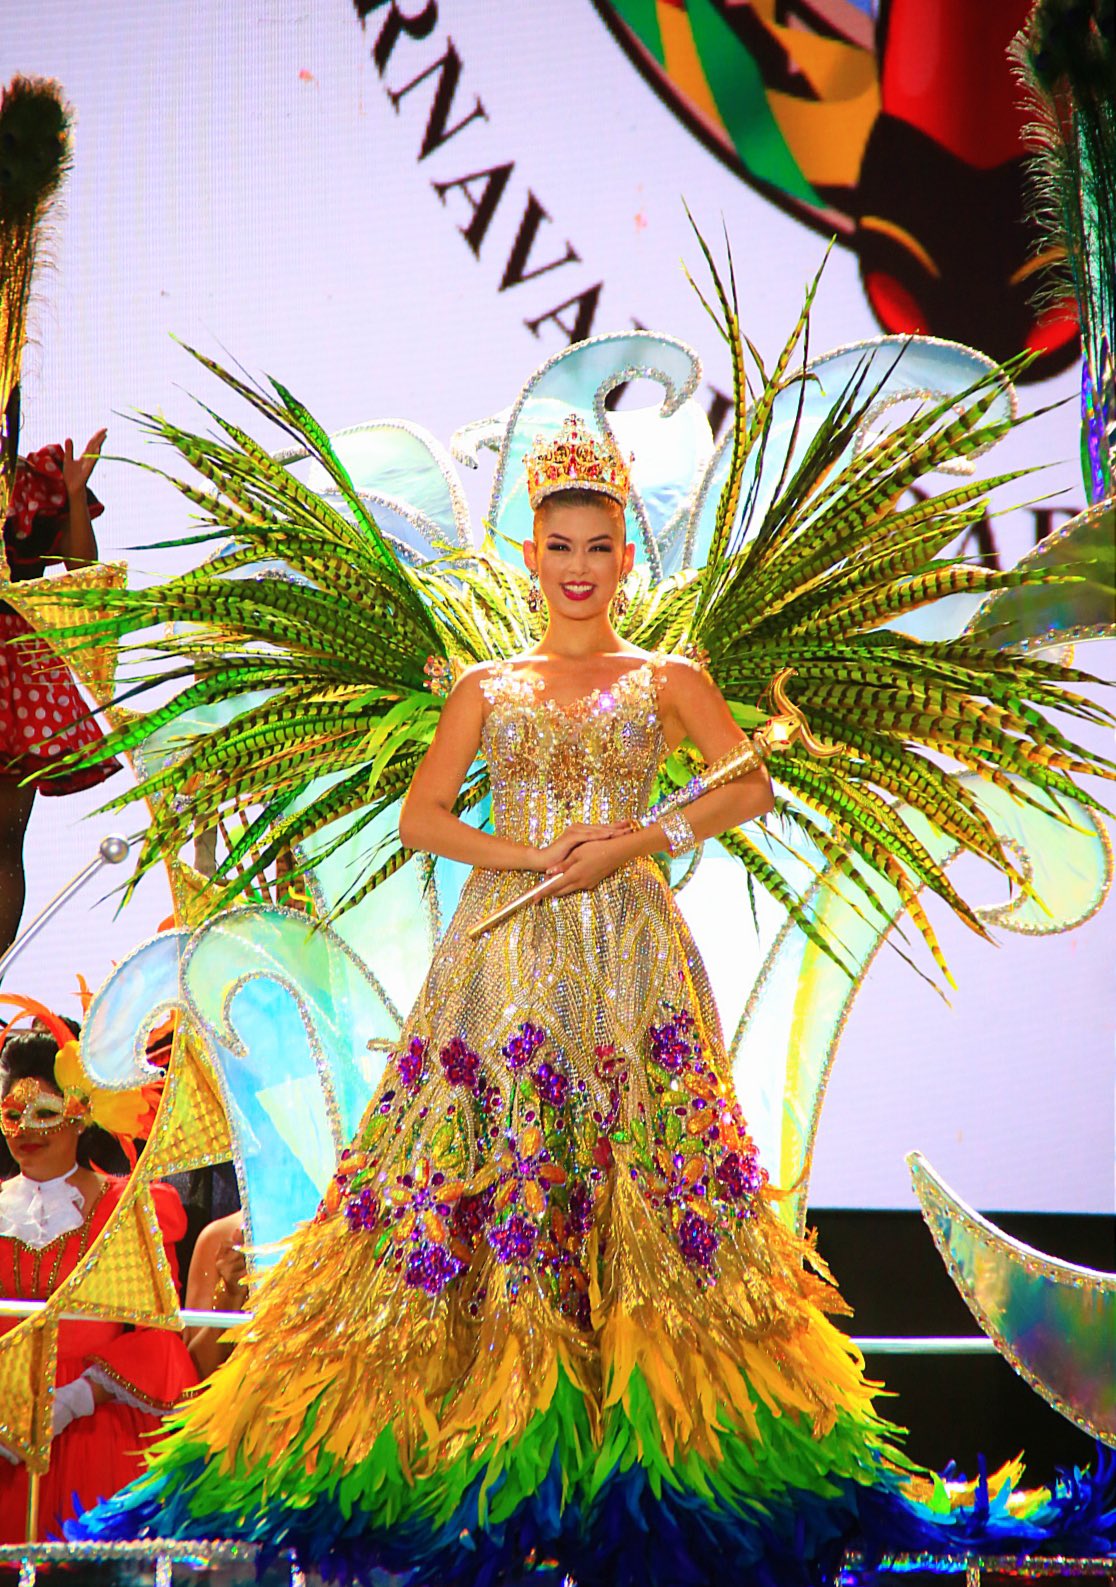 Funcionar condado Mujer joven تويتر \ Valeria Charris Salcedo على تويتر: "¡BARRANQUILLA, ME HAS DADO LA  NOCHE MÁS INOLVIDABLE DE MI VIDA! Aquí renace la alegría, renace la  esperanza, ¡RENACE EL CARNAVAL! Bienvenidos al Carnaval de